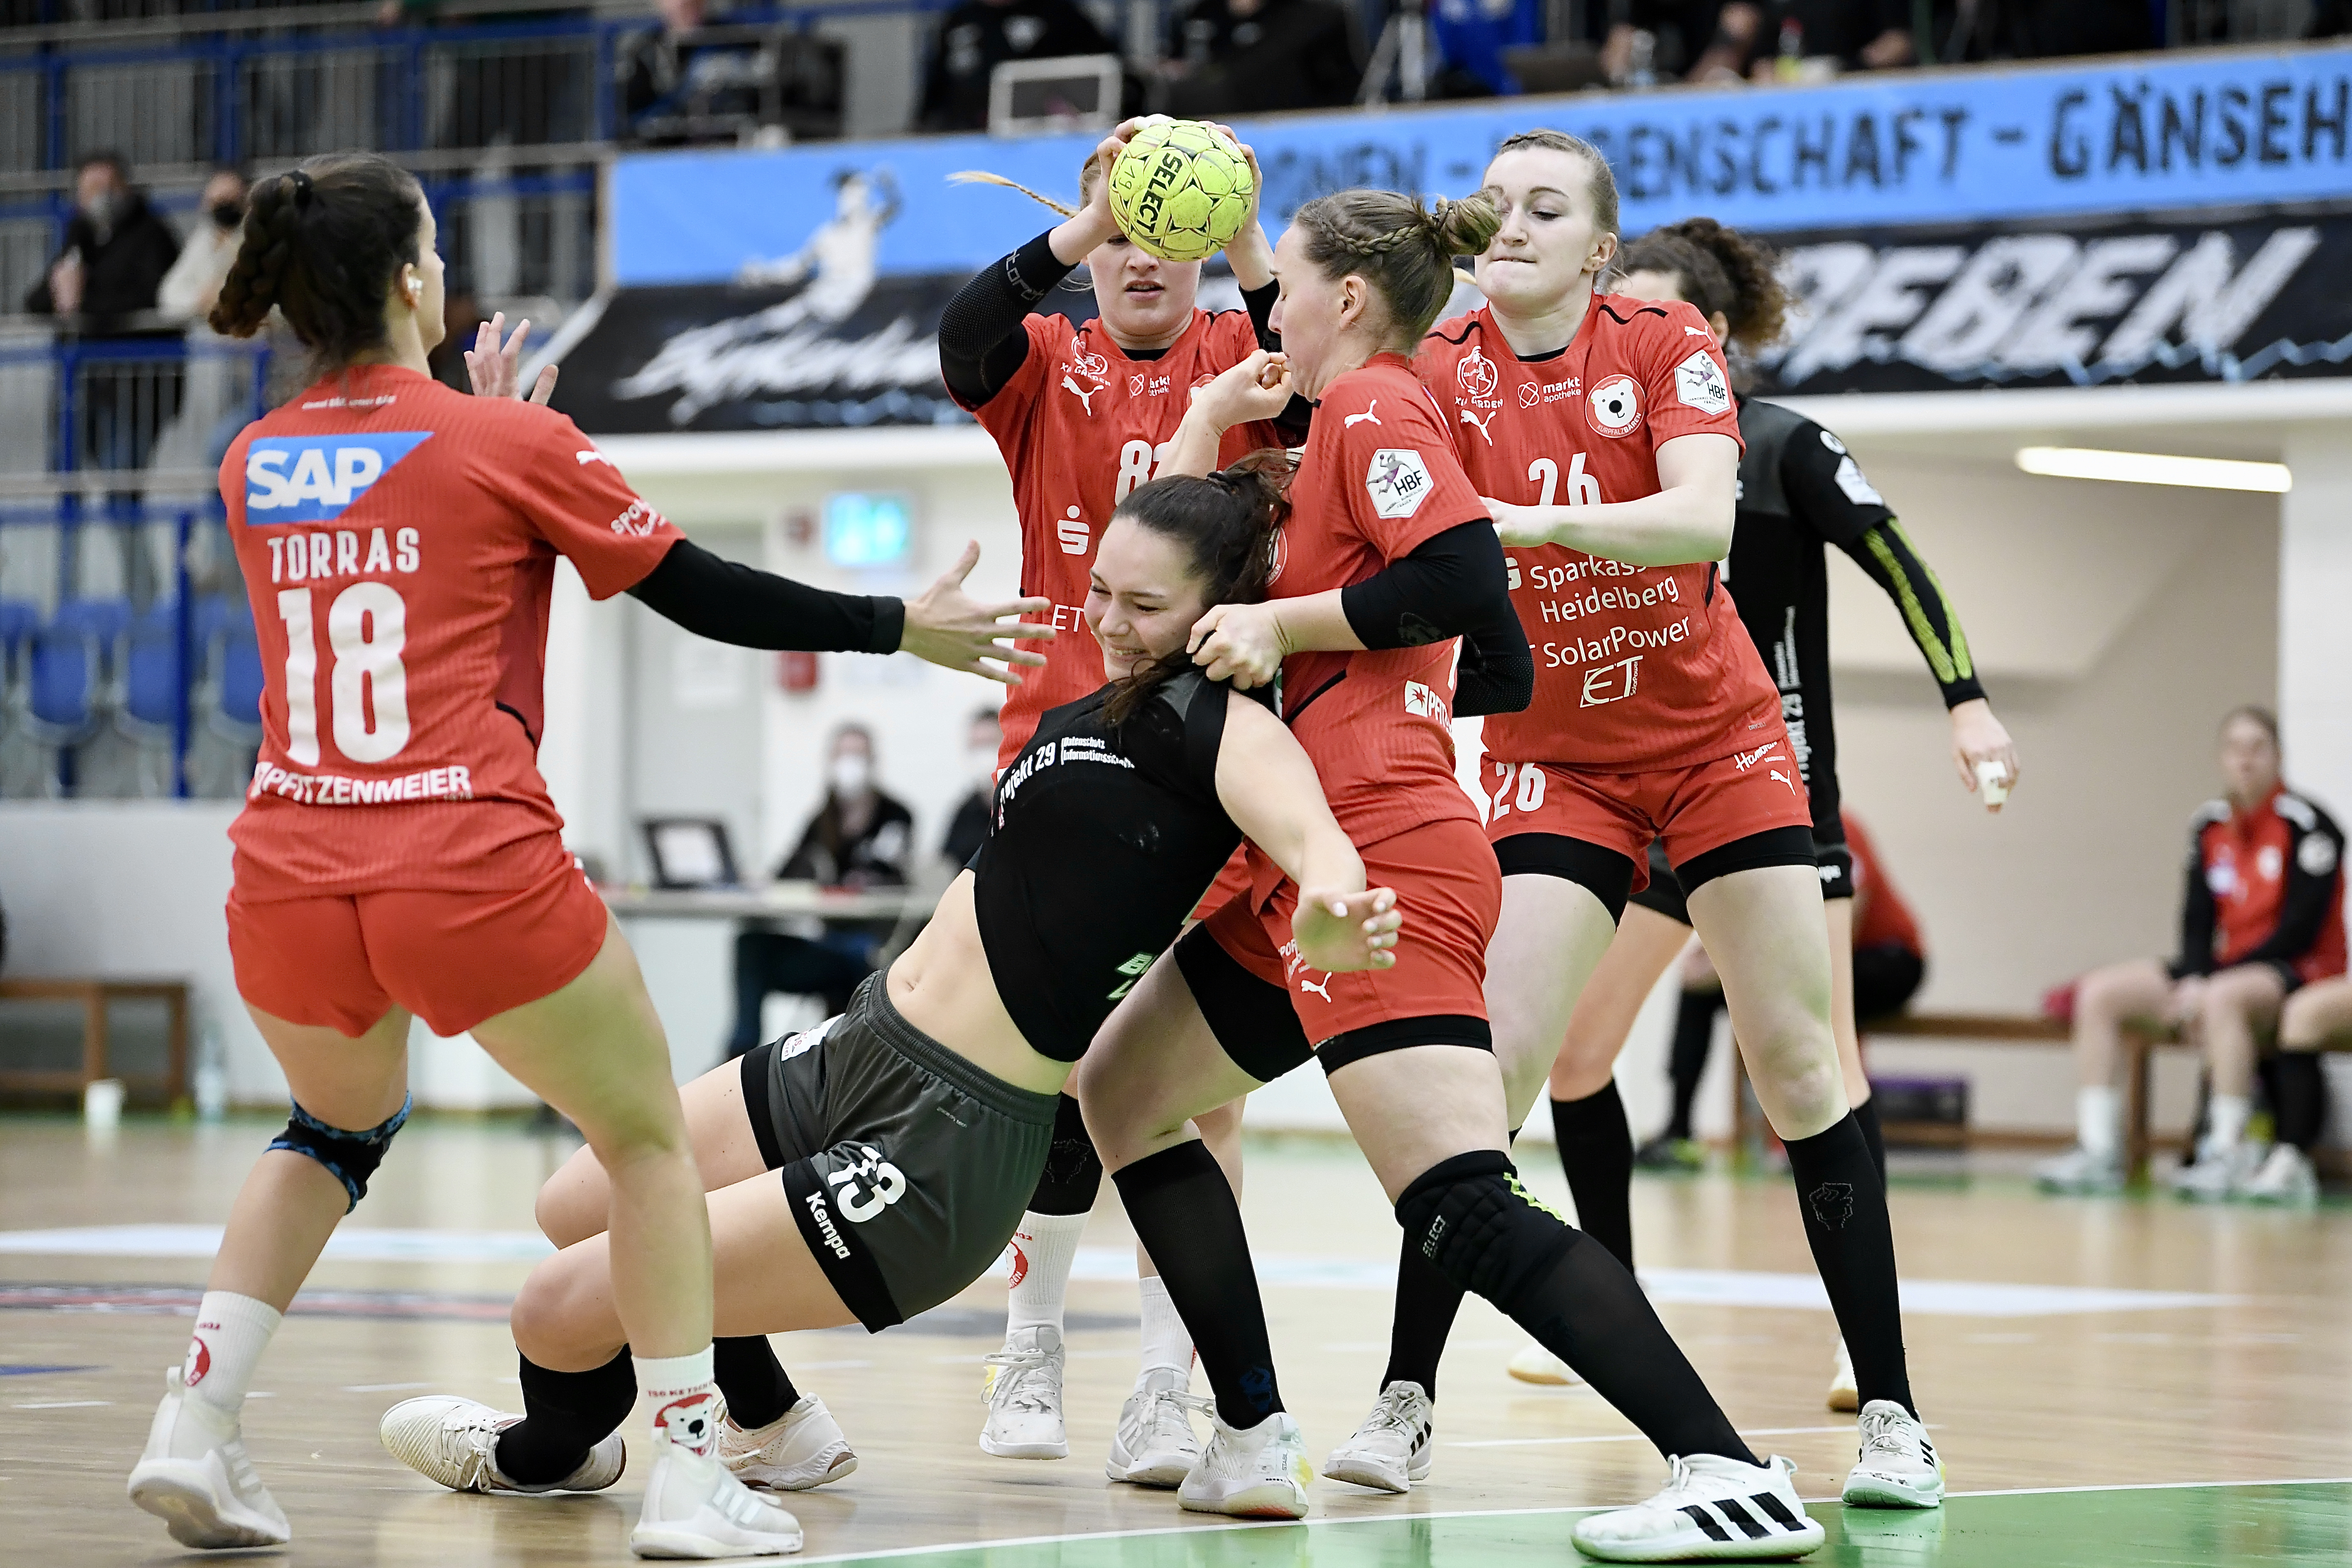 Bayerischer Handball-Verband